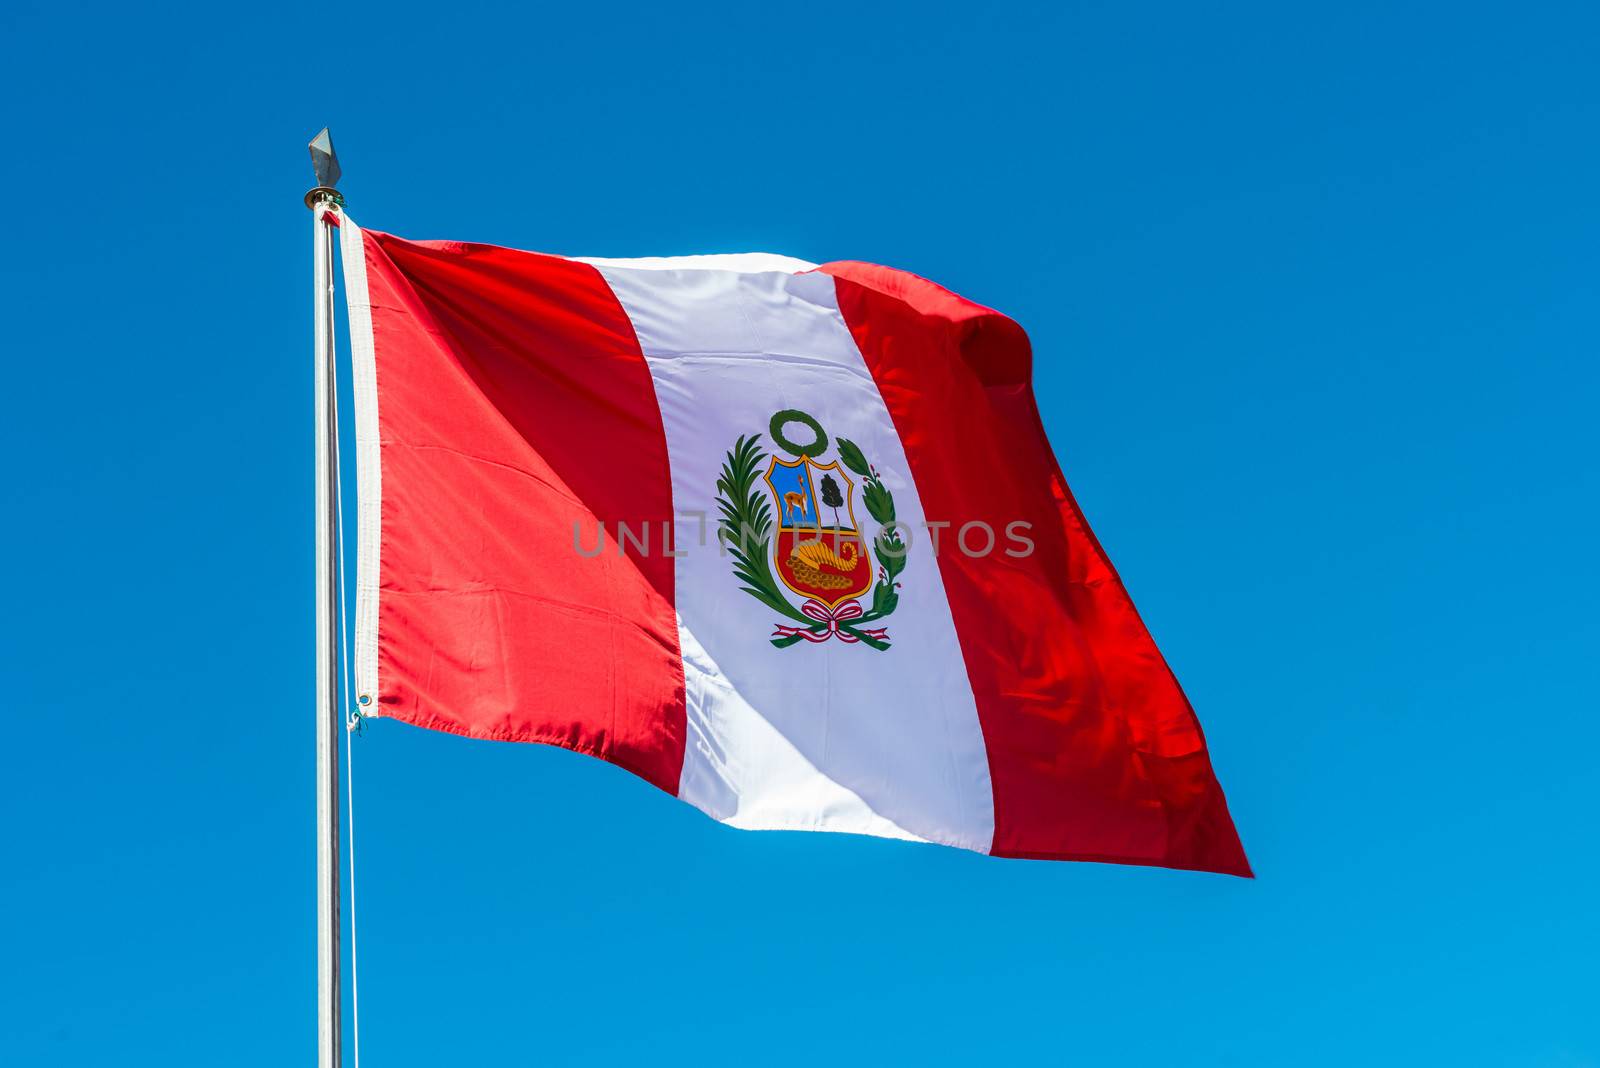 Peruvian Flag in the peruvian Andes at Puno Peru